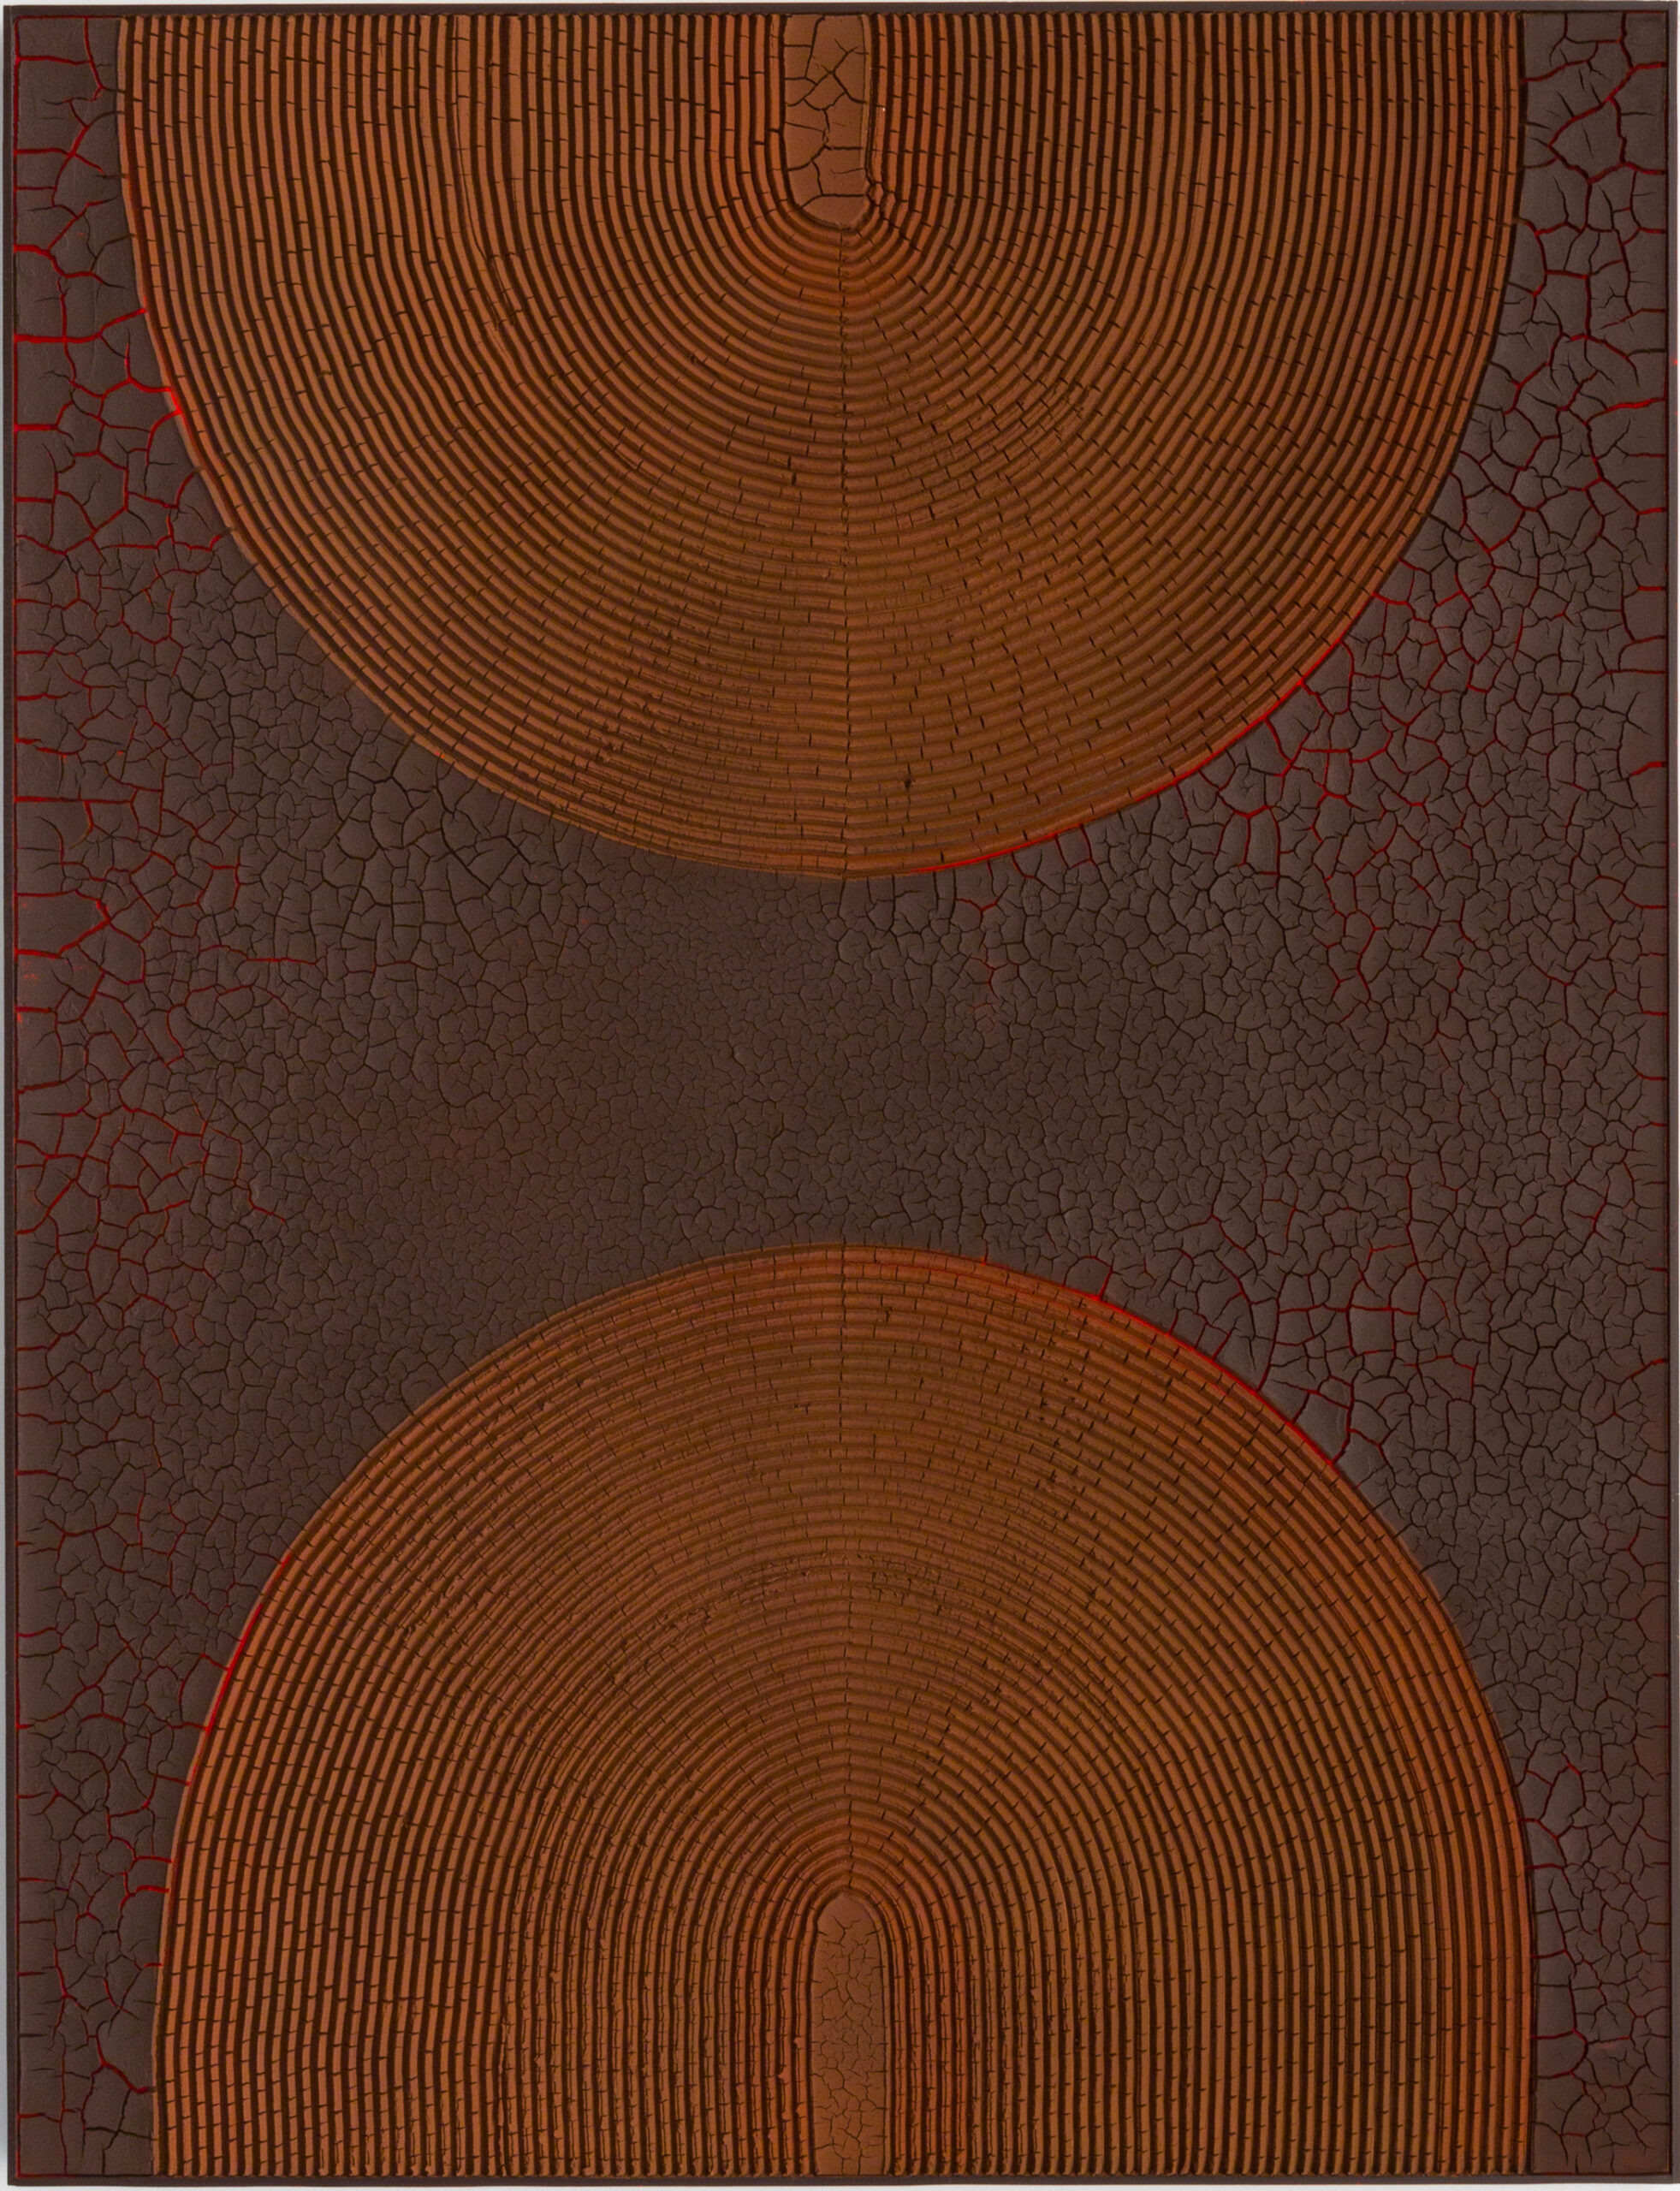 ROOTS, 2022. Terre crue et pigments sur panneau en bois. 170 x 130 cm.